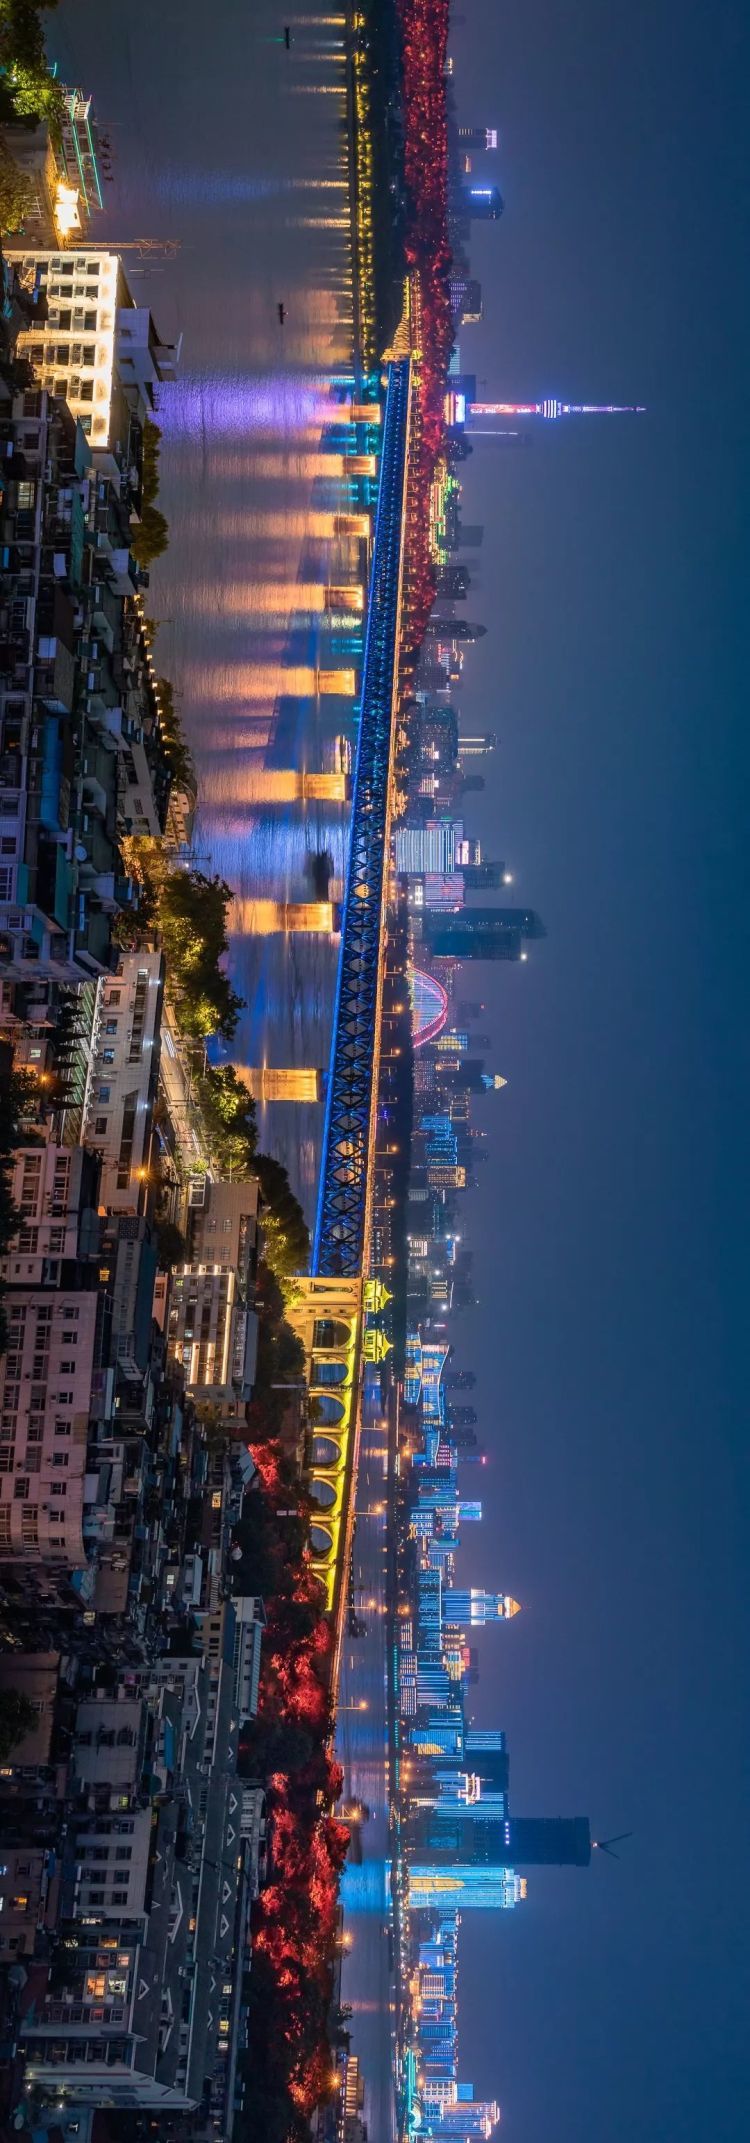 什么是武汉？这是个适合横屏观看的城市 太美了！